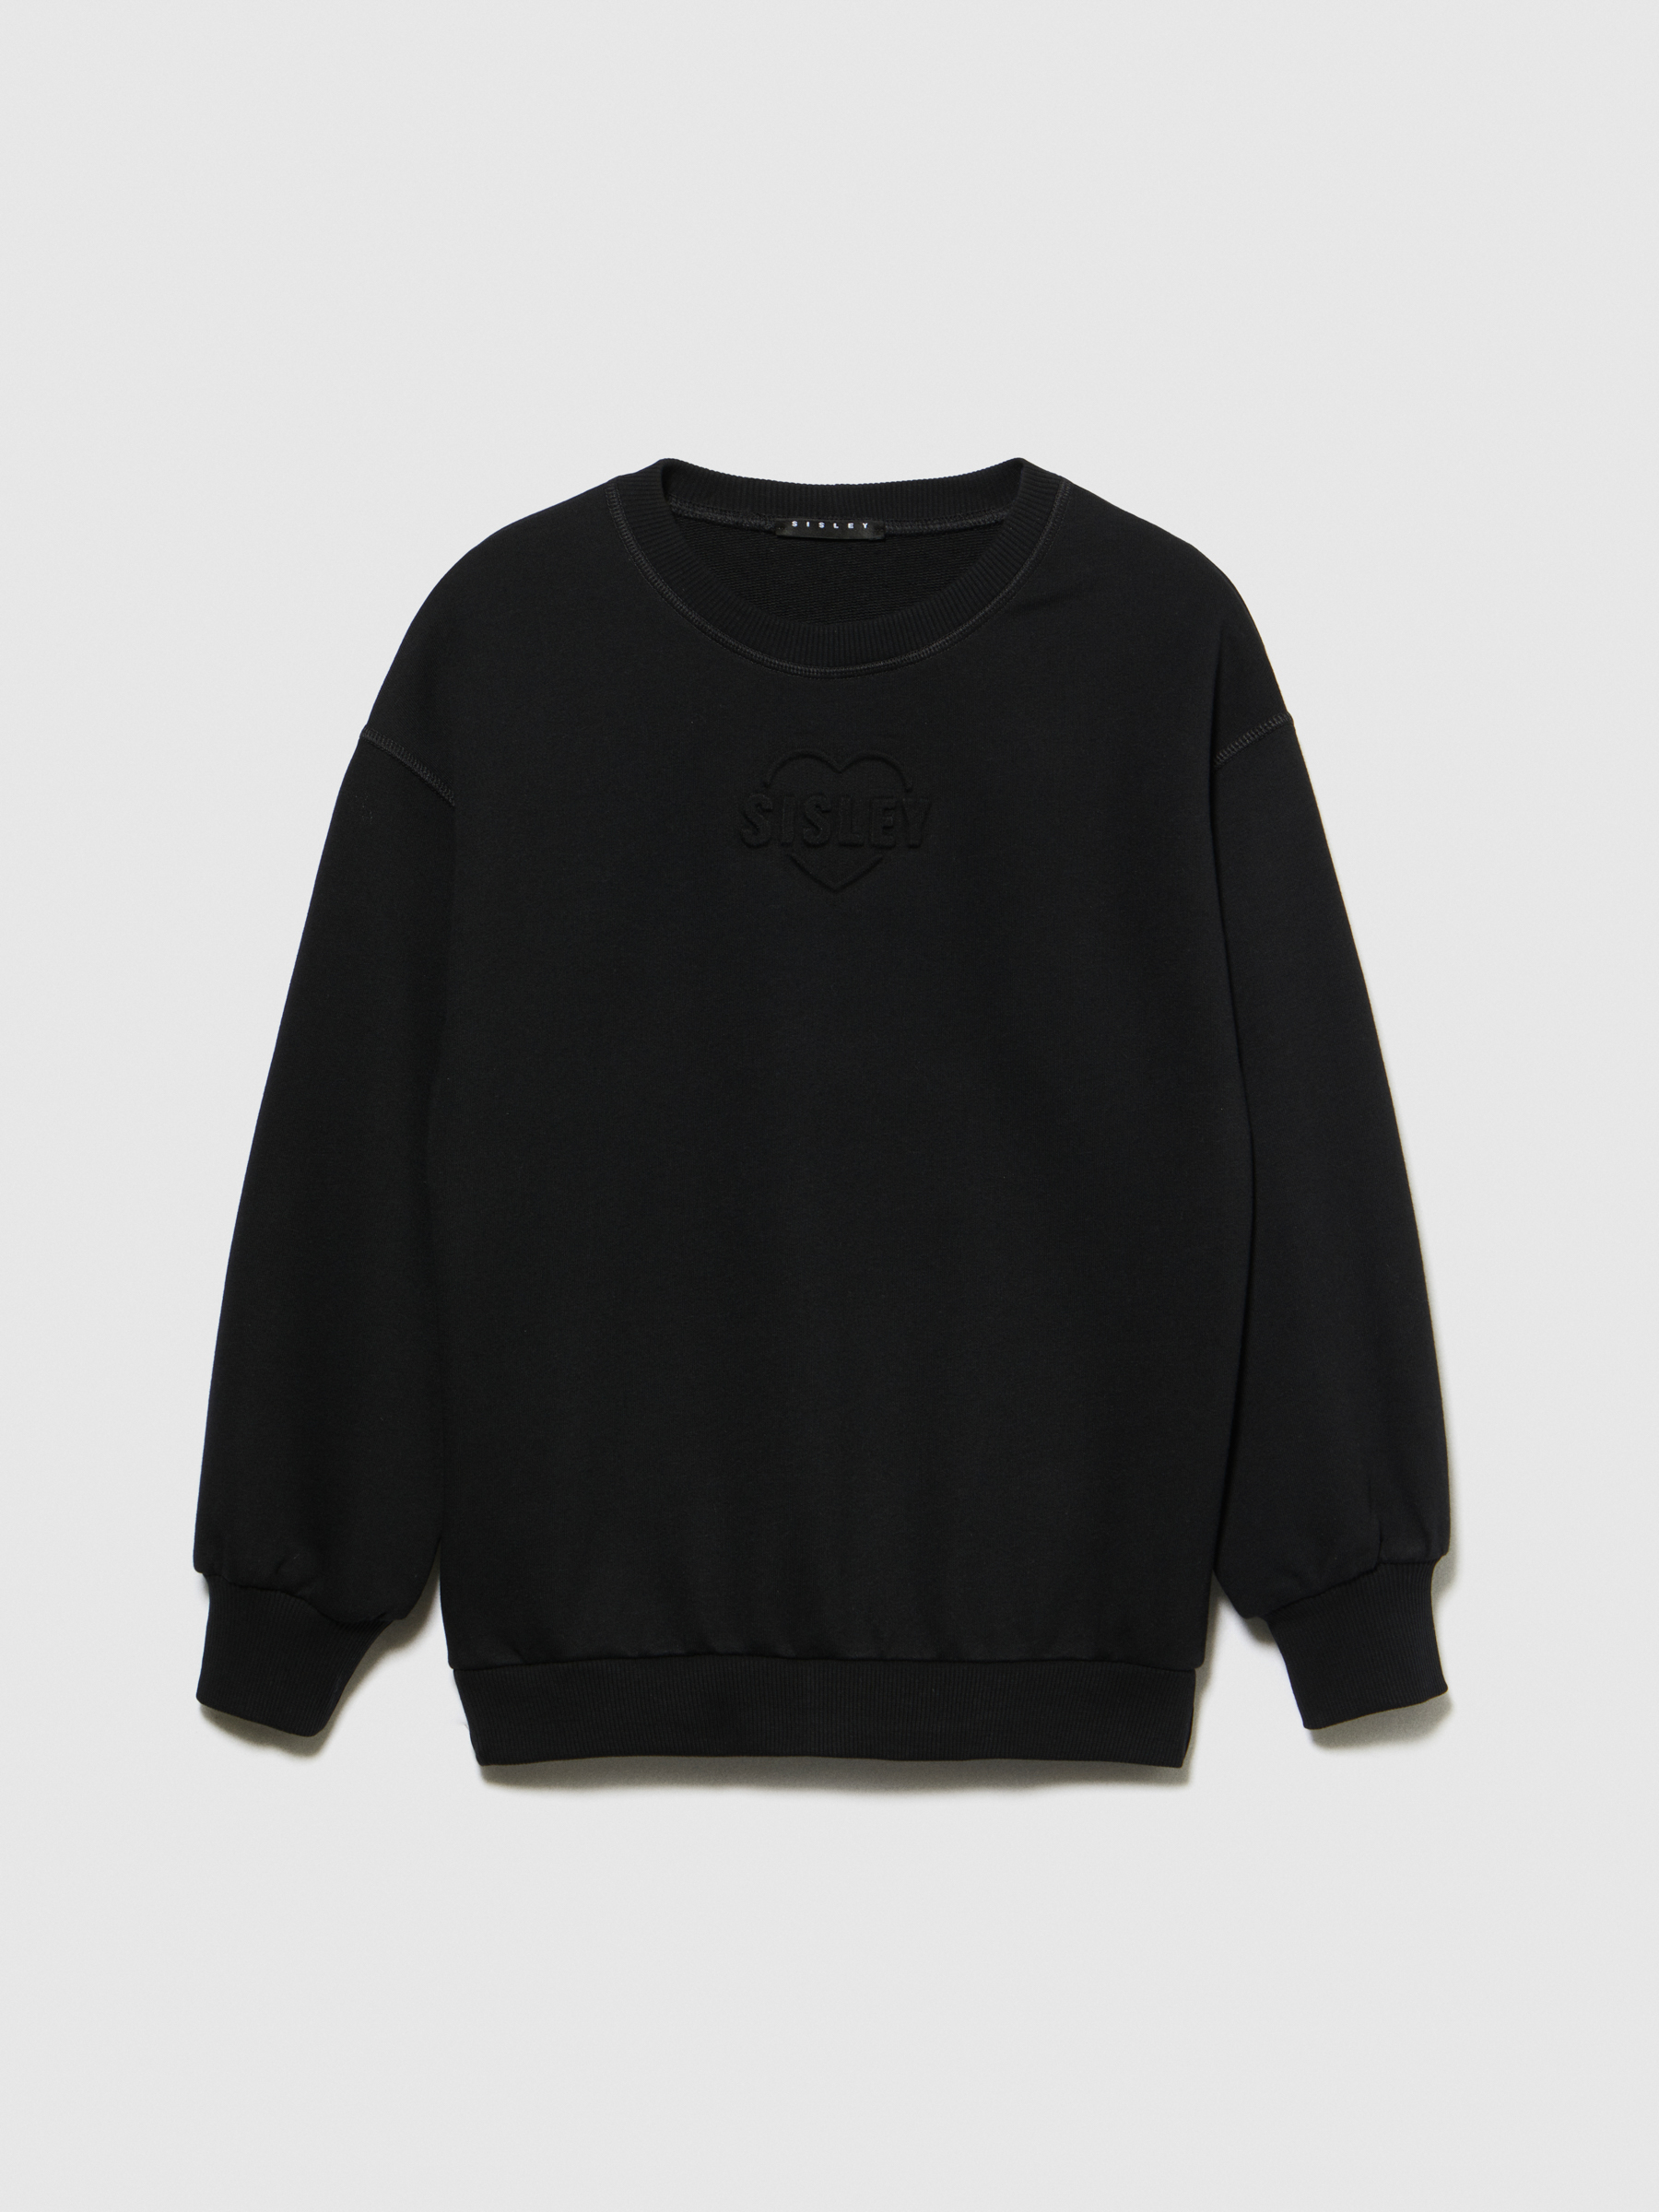 Sisley Young - Sweatshirt With Embossed Print, Woman, Black, Size: S